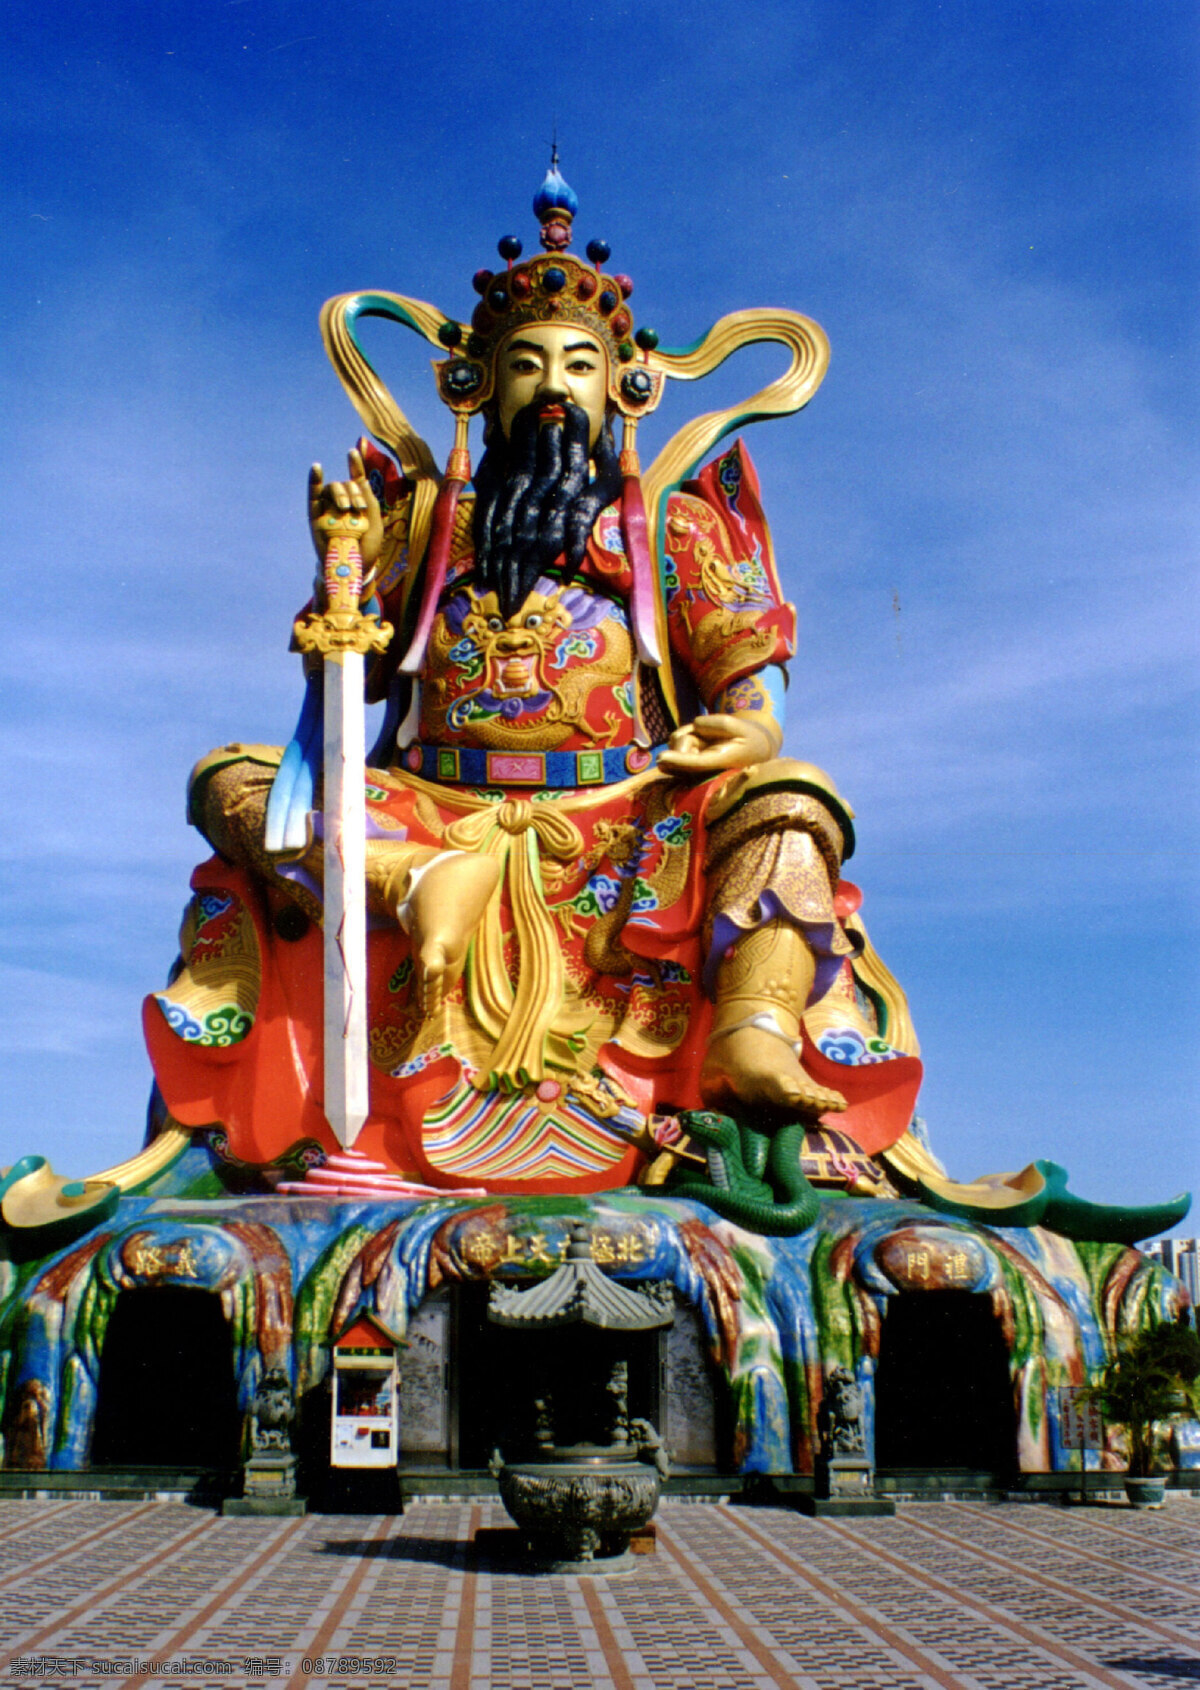 财神塑像 旅游摄影 人文景观 中国风情 摄影图库